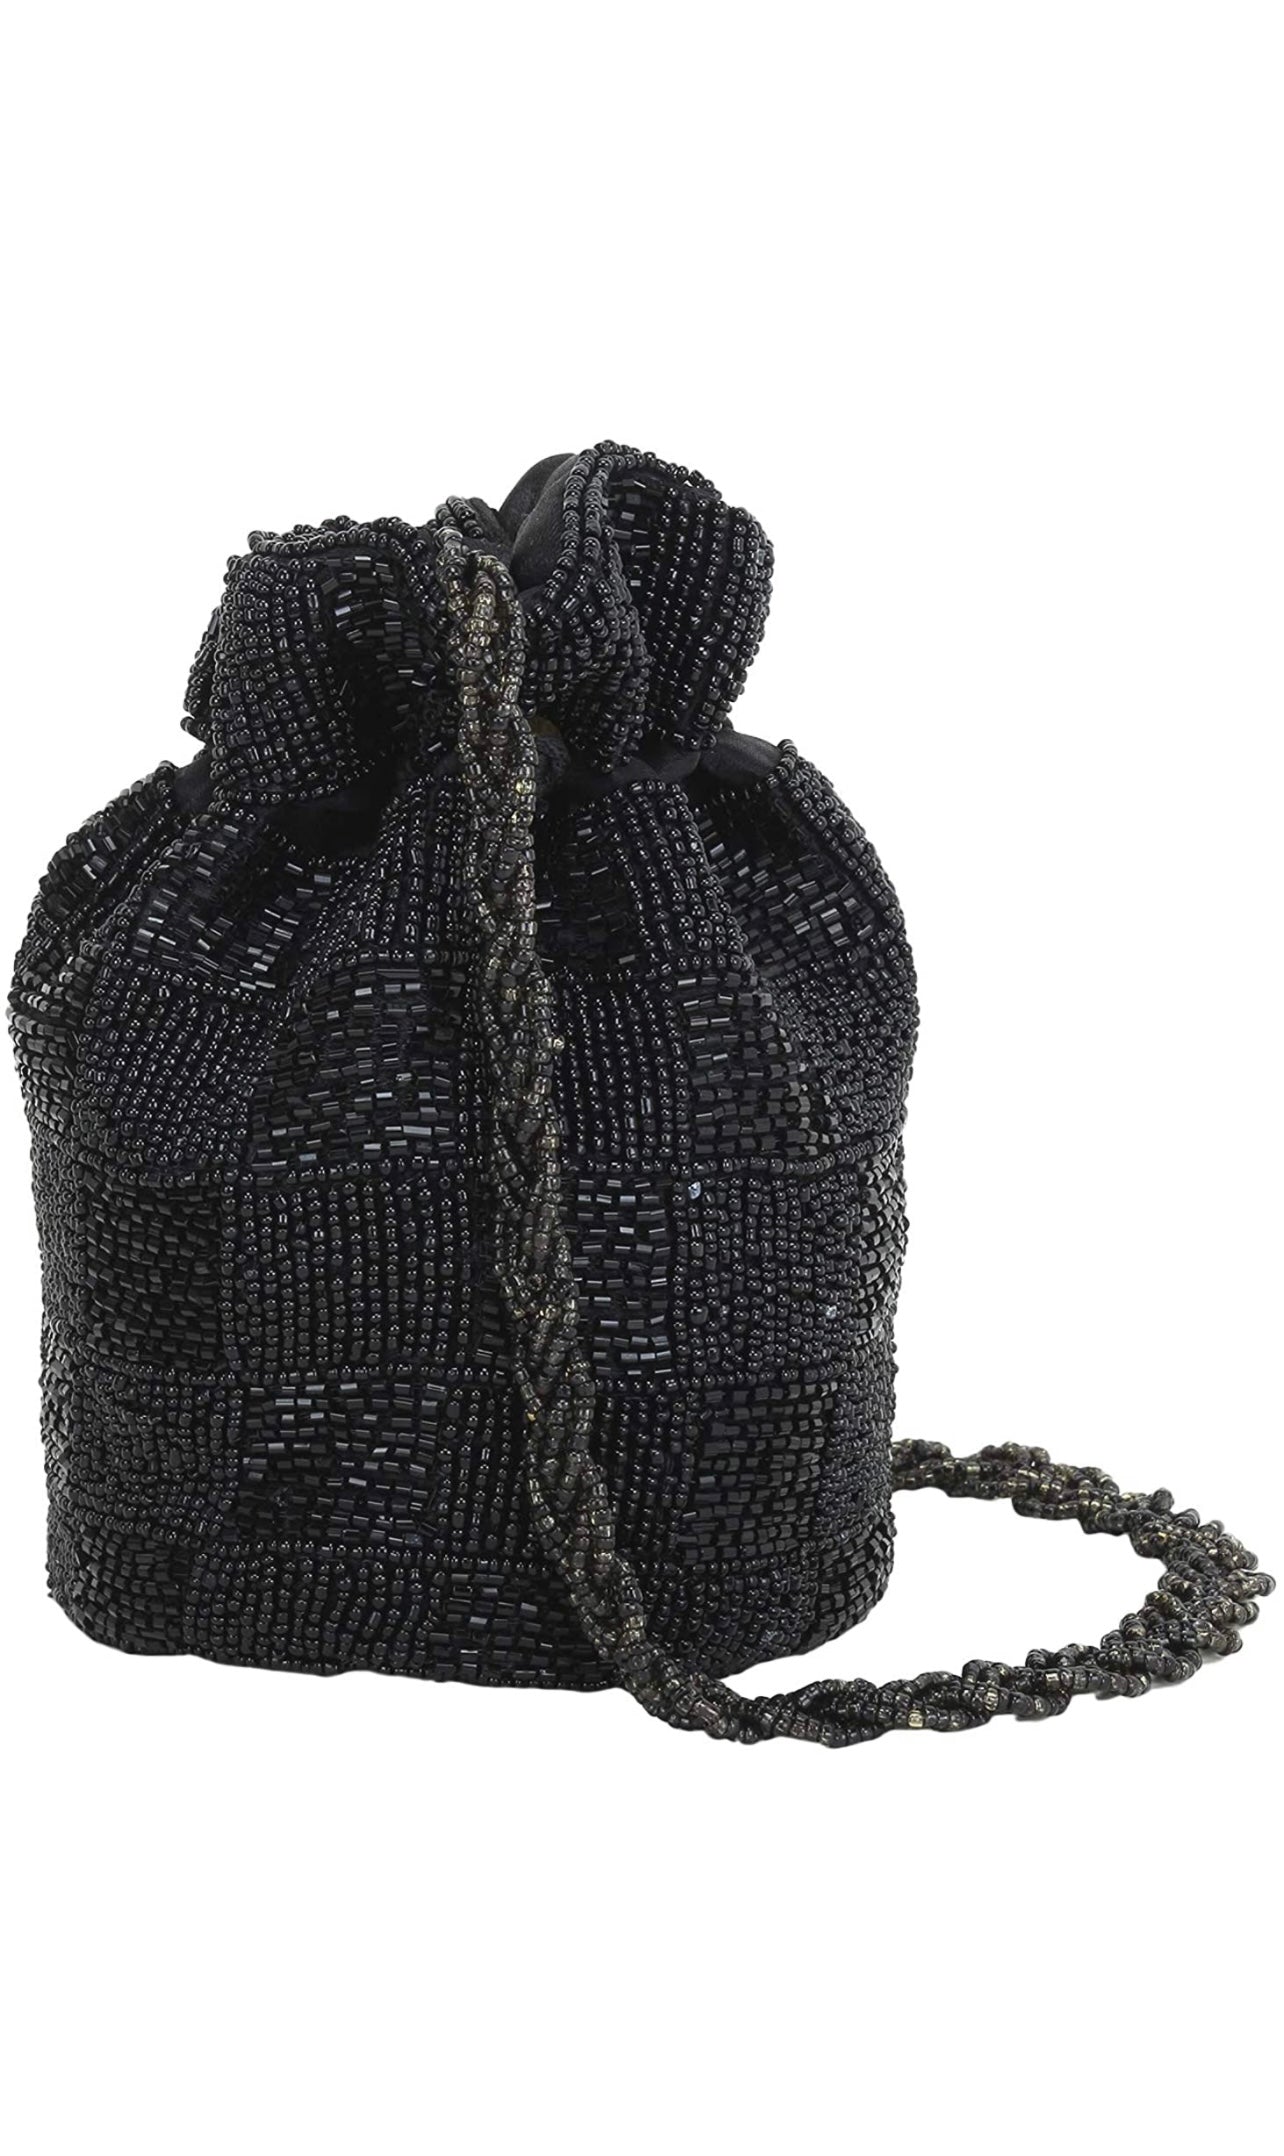 Black Designer Handmade Beaded Potli bag